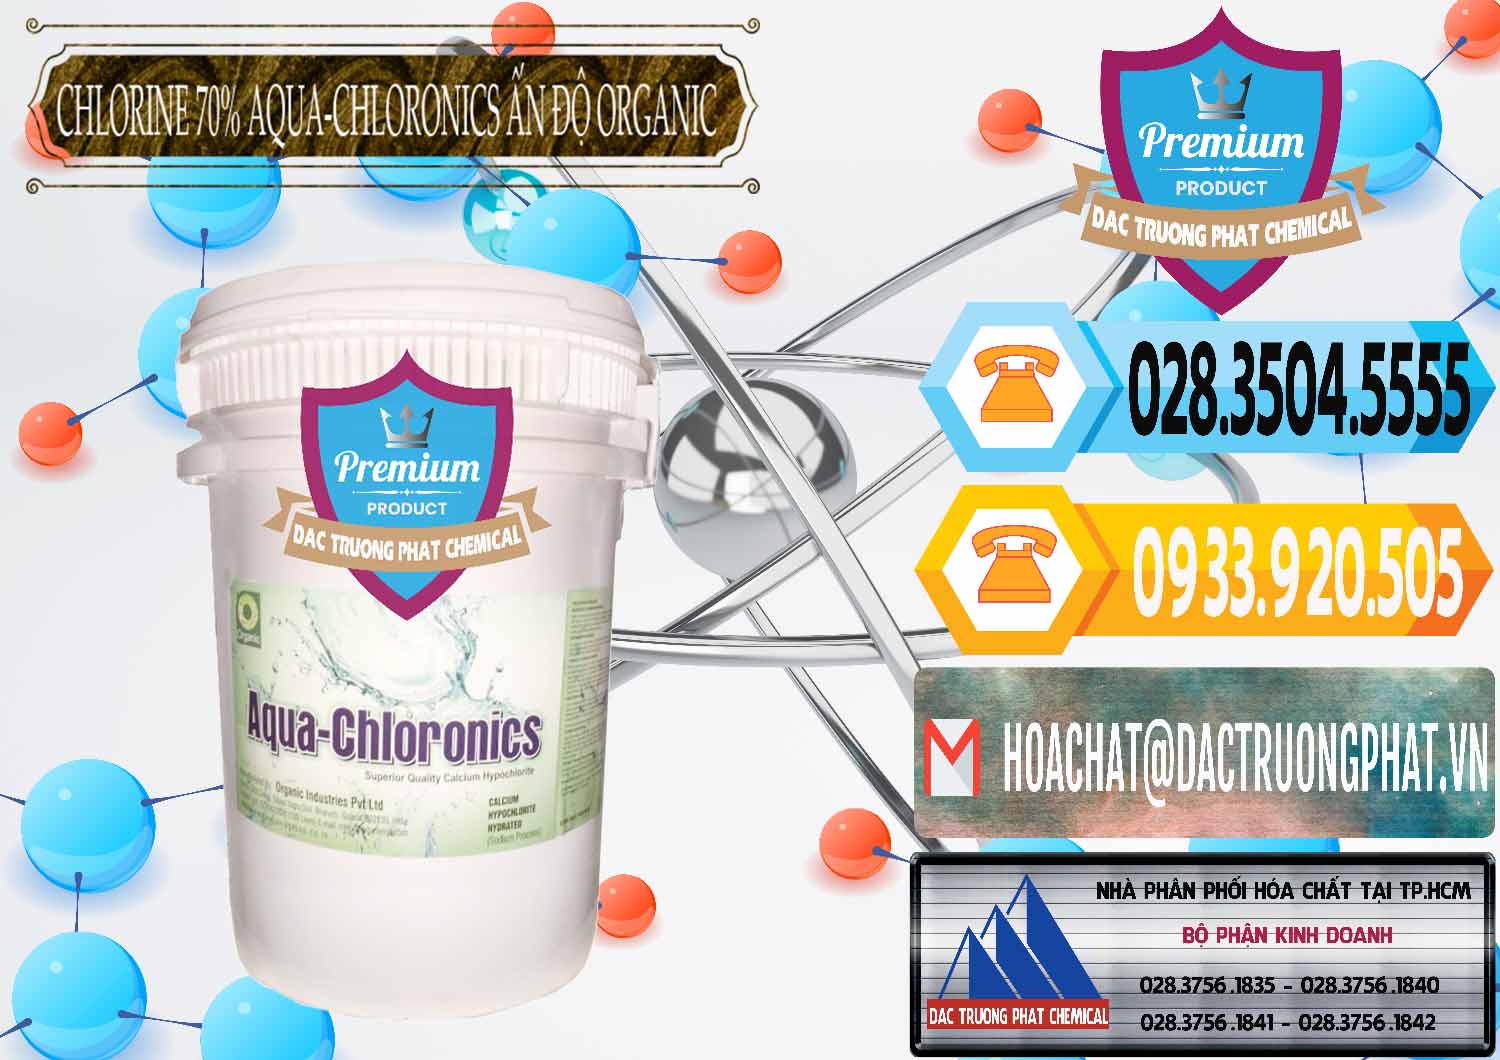 Công ty chuyên bán & cung cấp Chlorine – Clorin 70% Aqua-Chloronics Ấn Độ Organic India - 0211 - Công ty cung cấp và nhập khẩu hóa chất tại TP.HCM - hoachattayrua.net